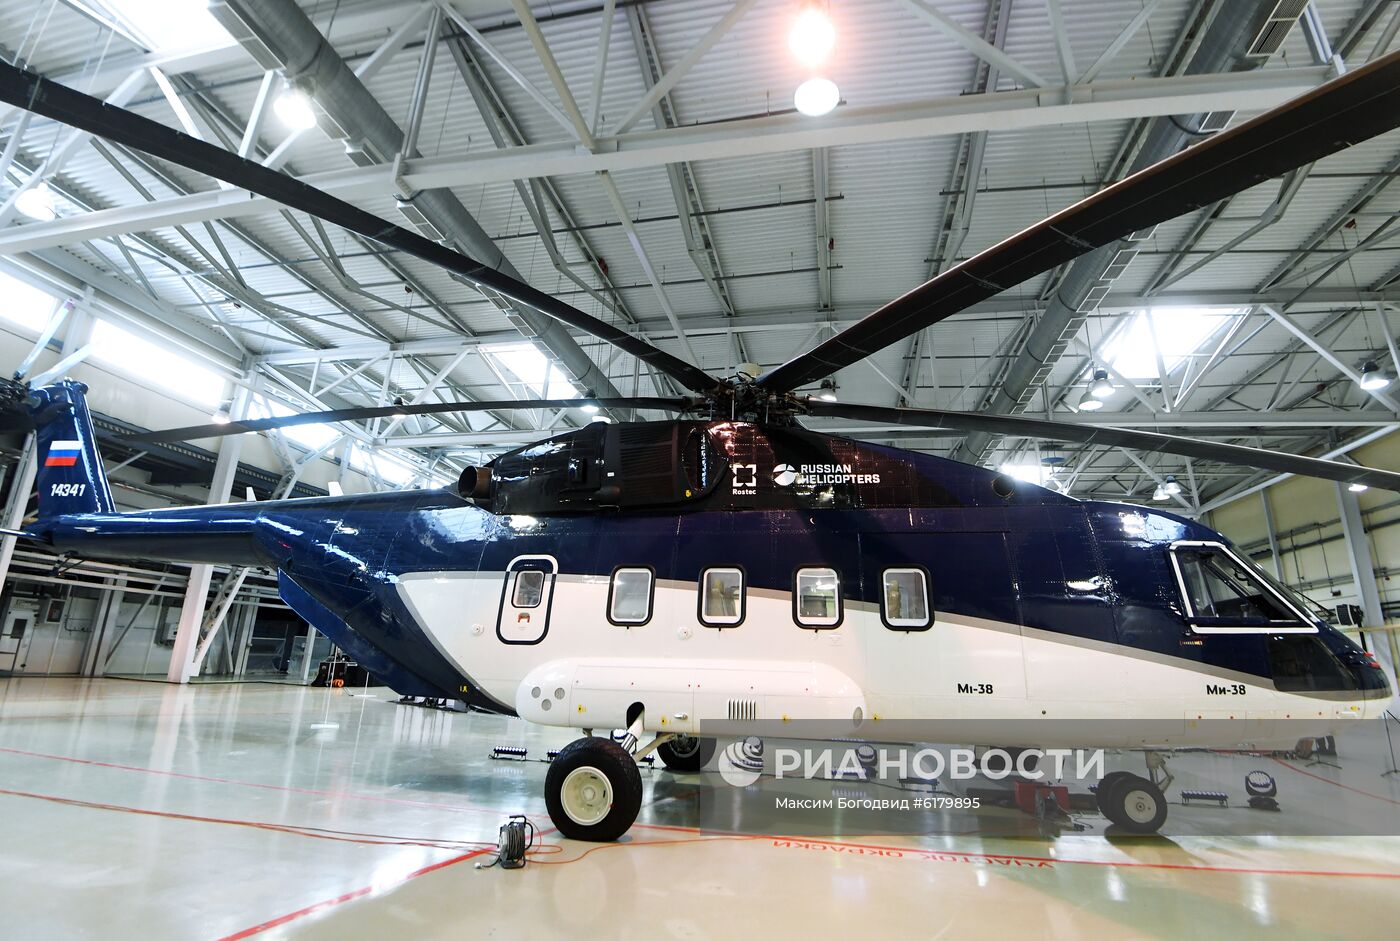 Первый гражданский вертолет Ми-38 с салоном повышенной комфортности передан заказчику